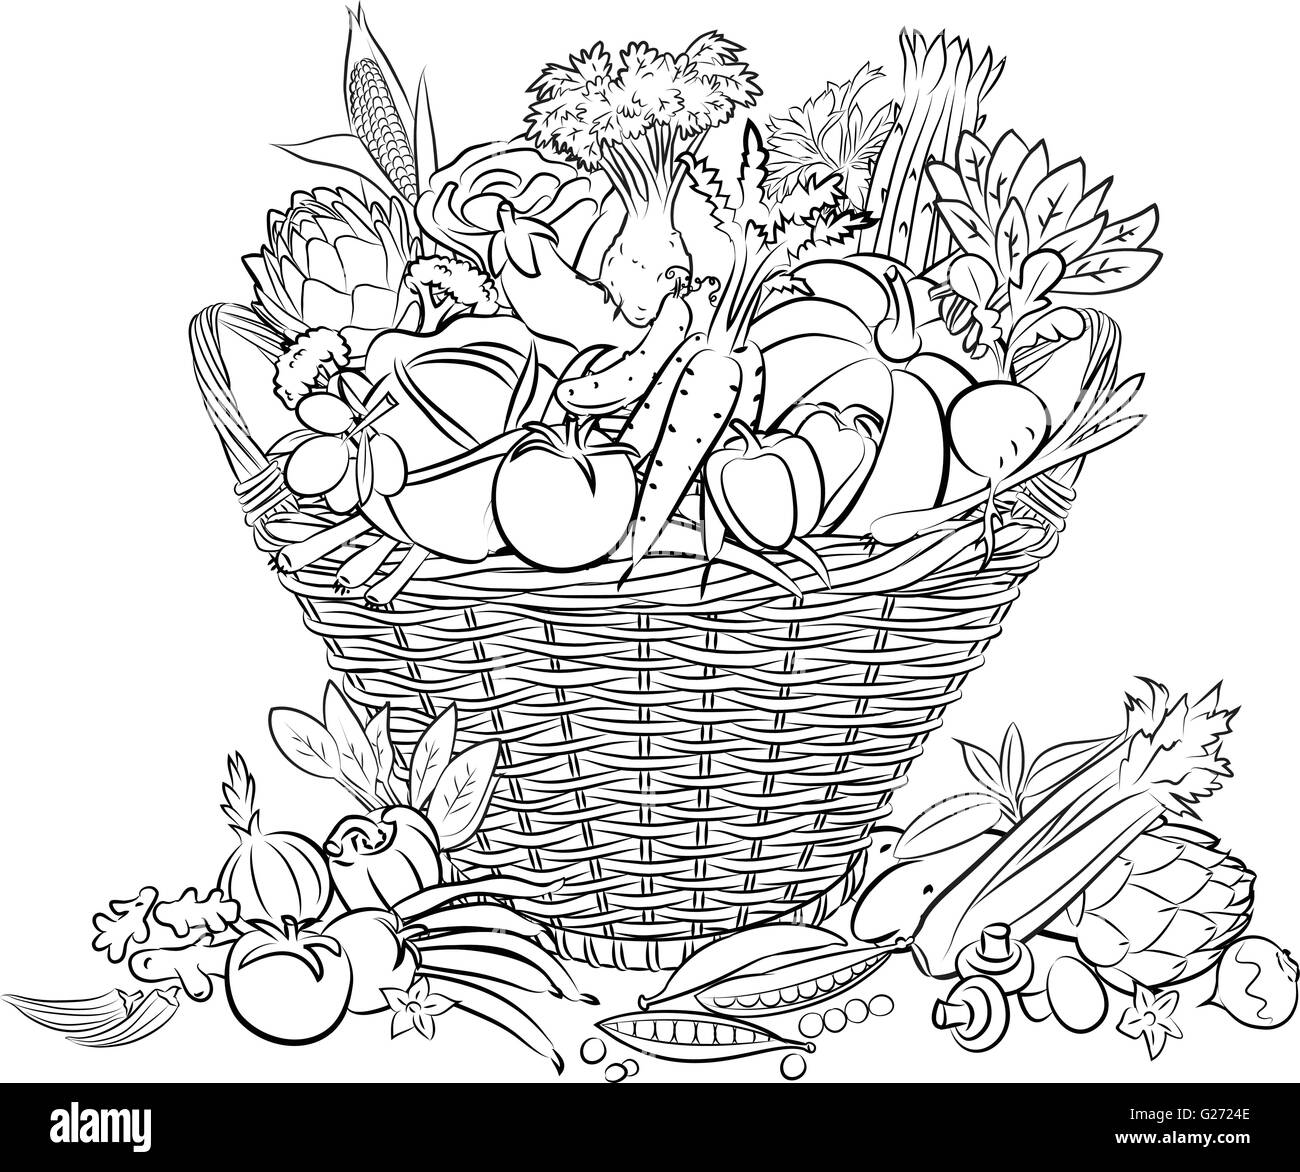 vector illustration of basket full of vegetables in line art mode Stock Vector